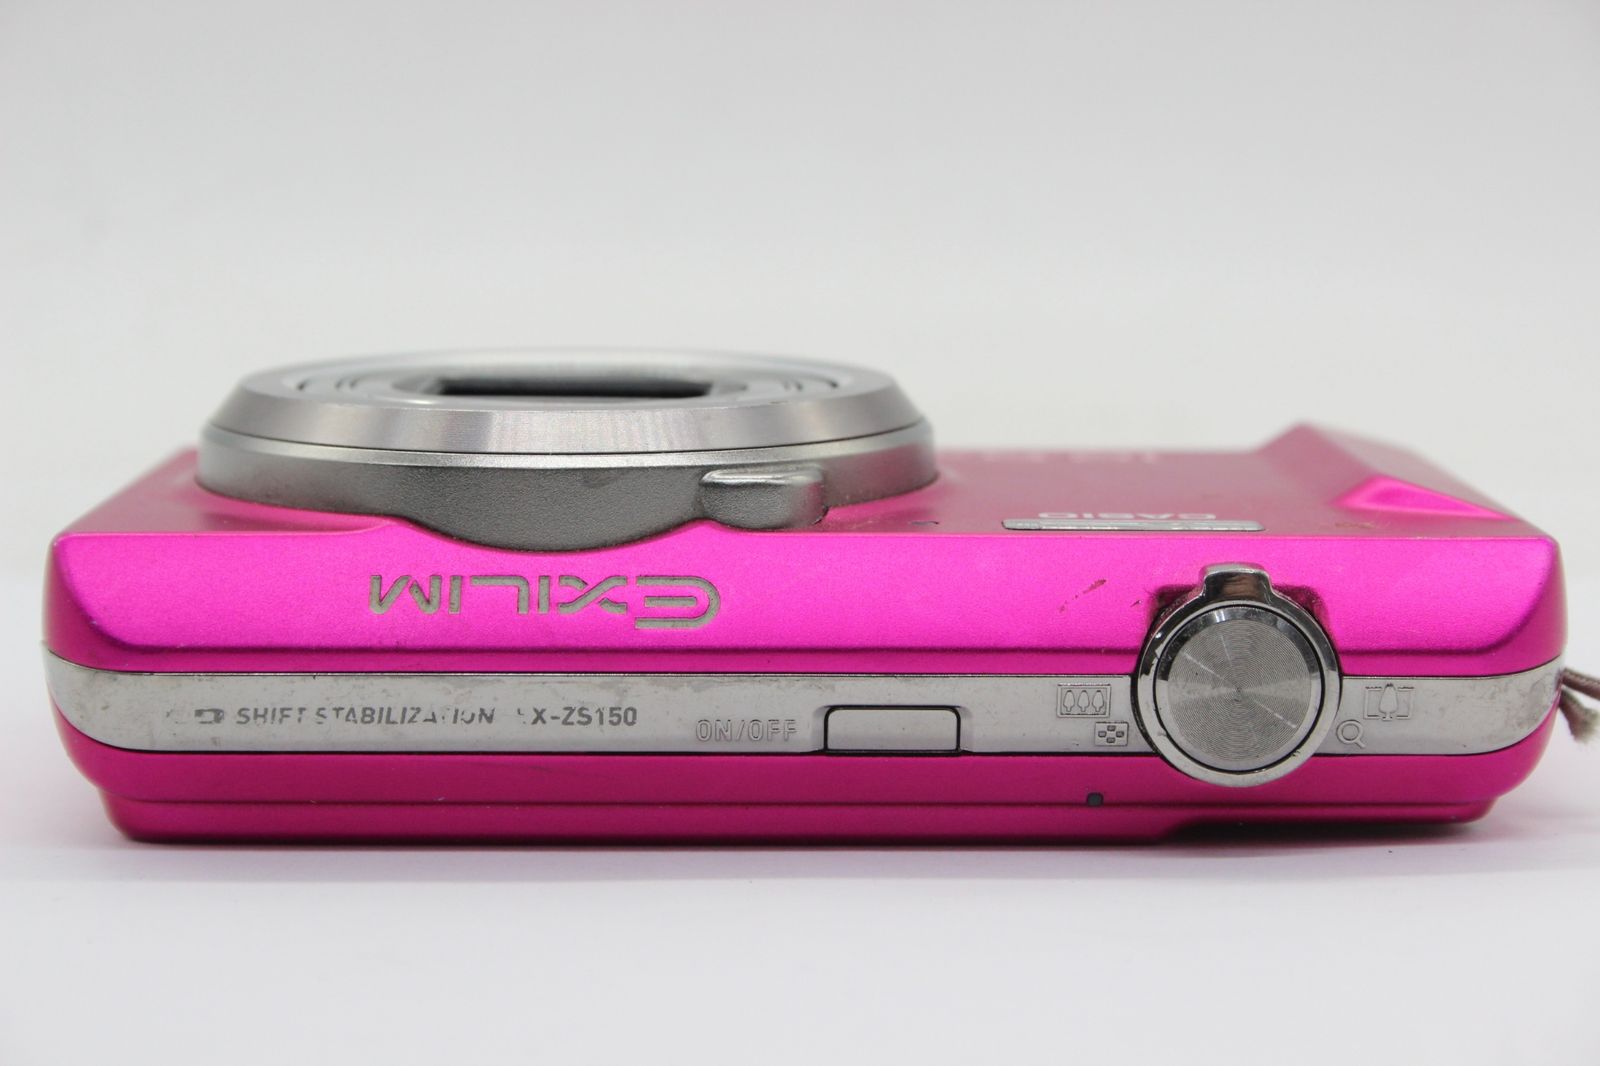 【返品保証】 カシオ Casio Exilim EX-ZS150 ピンク 12.5x コンパクトデジタルカメラ v621